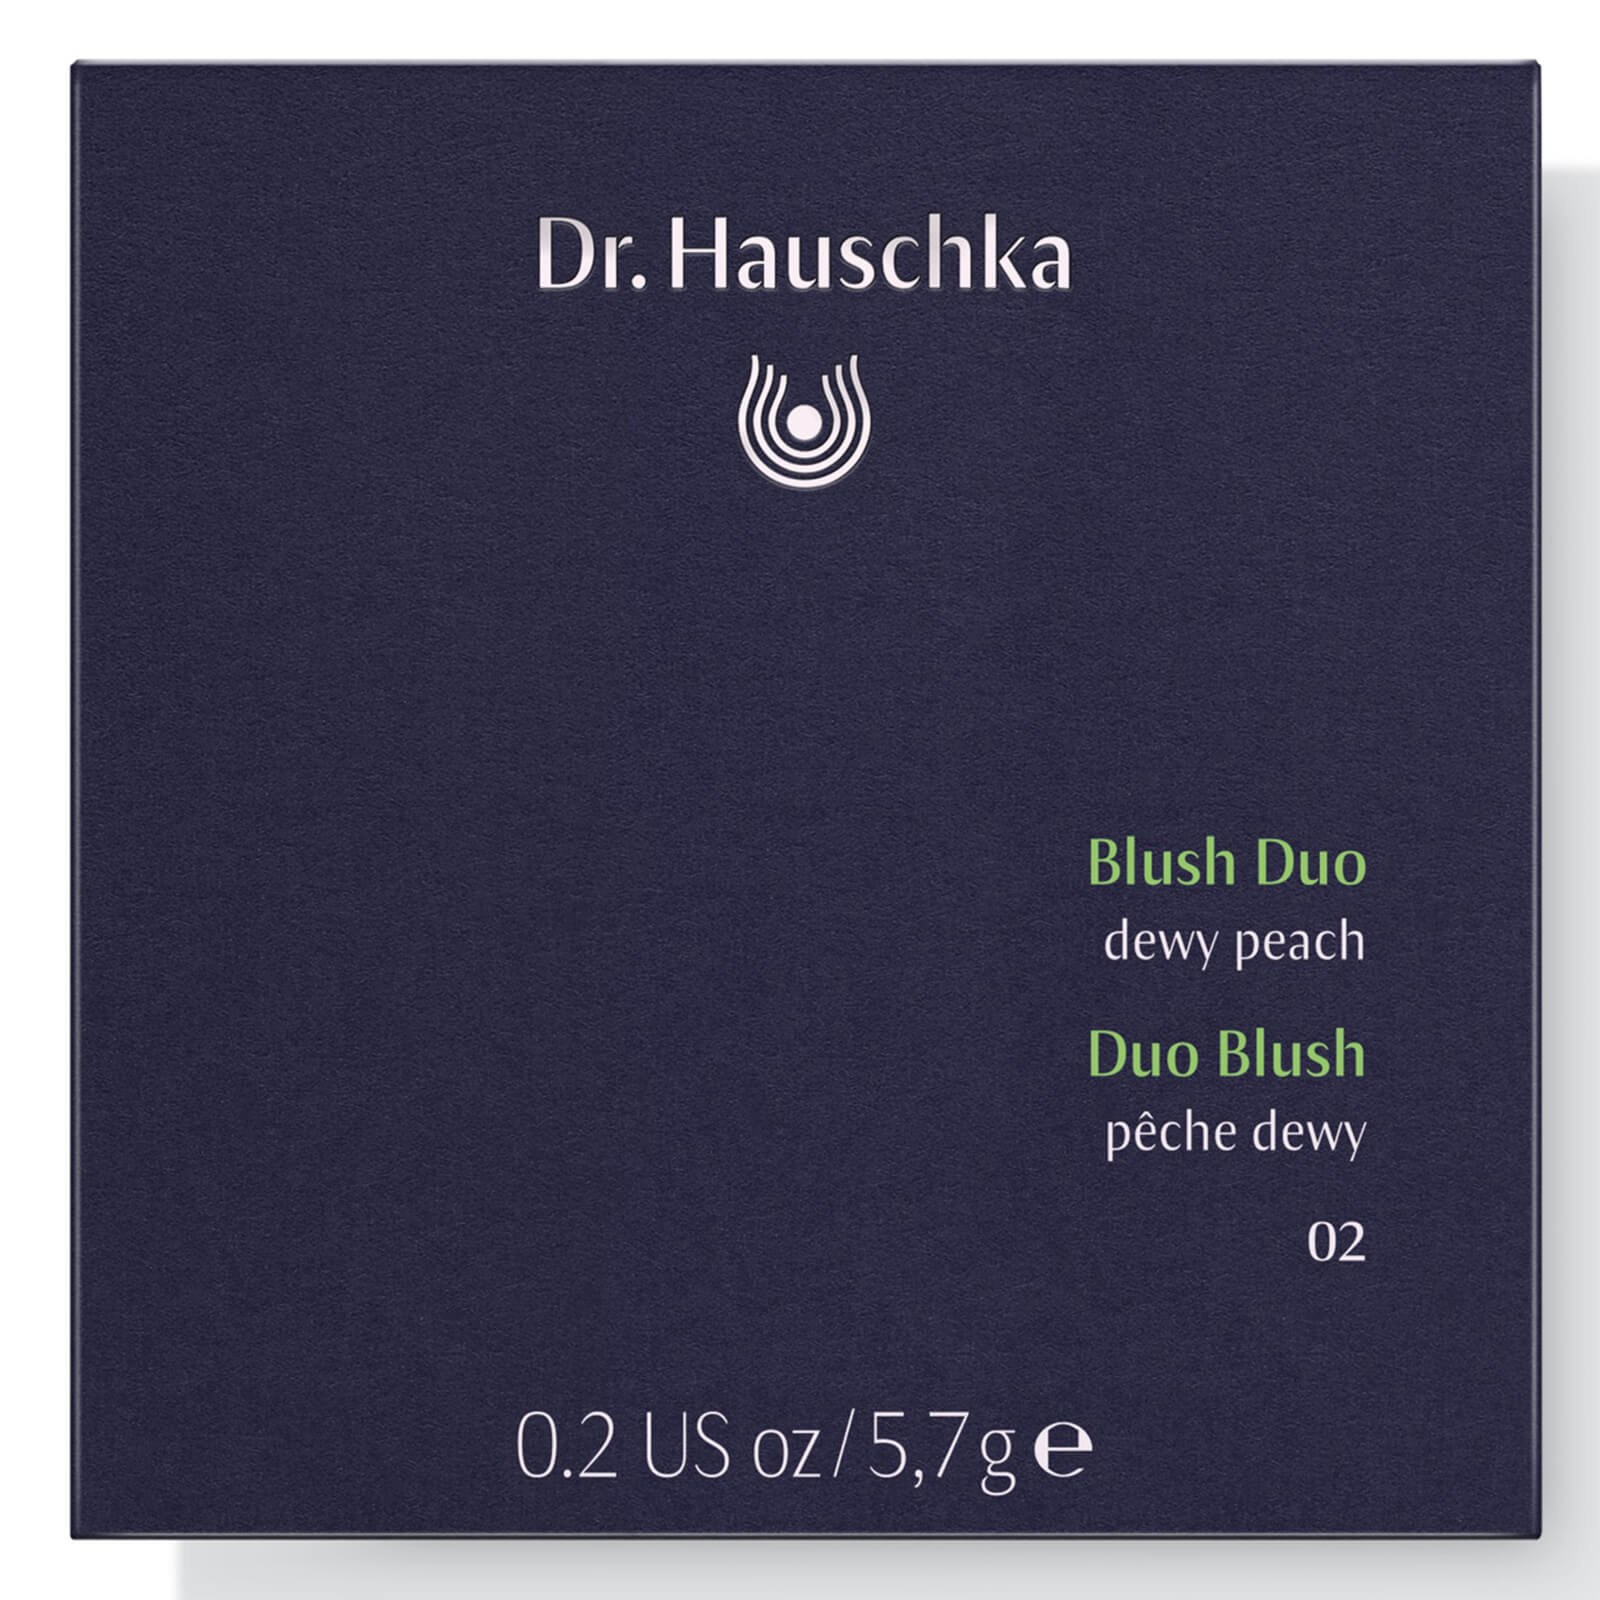 Dúo de colorete de Dr. Hauschka